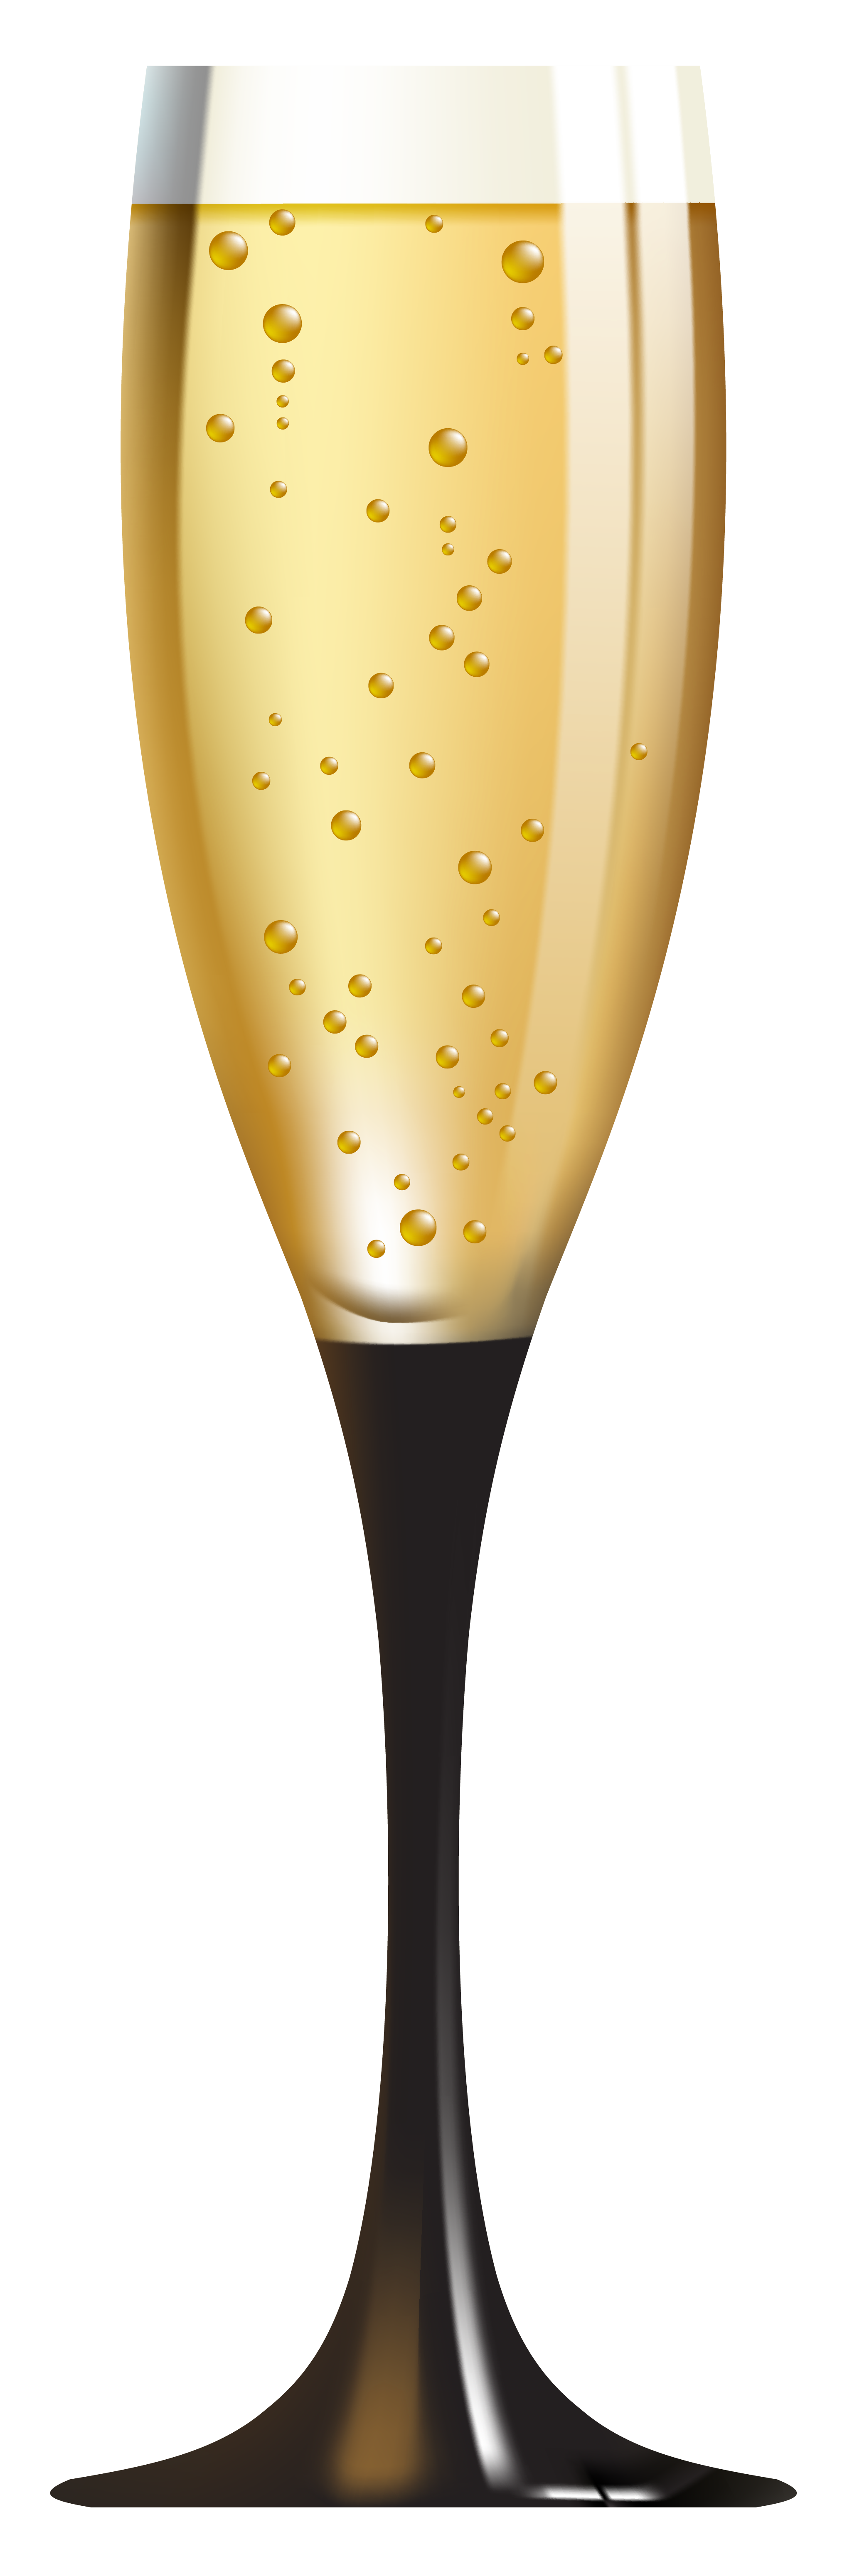 Champagne glass clip art free contempocorp